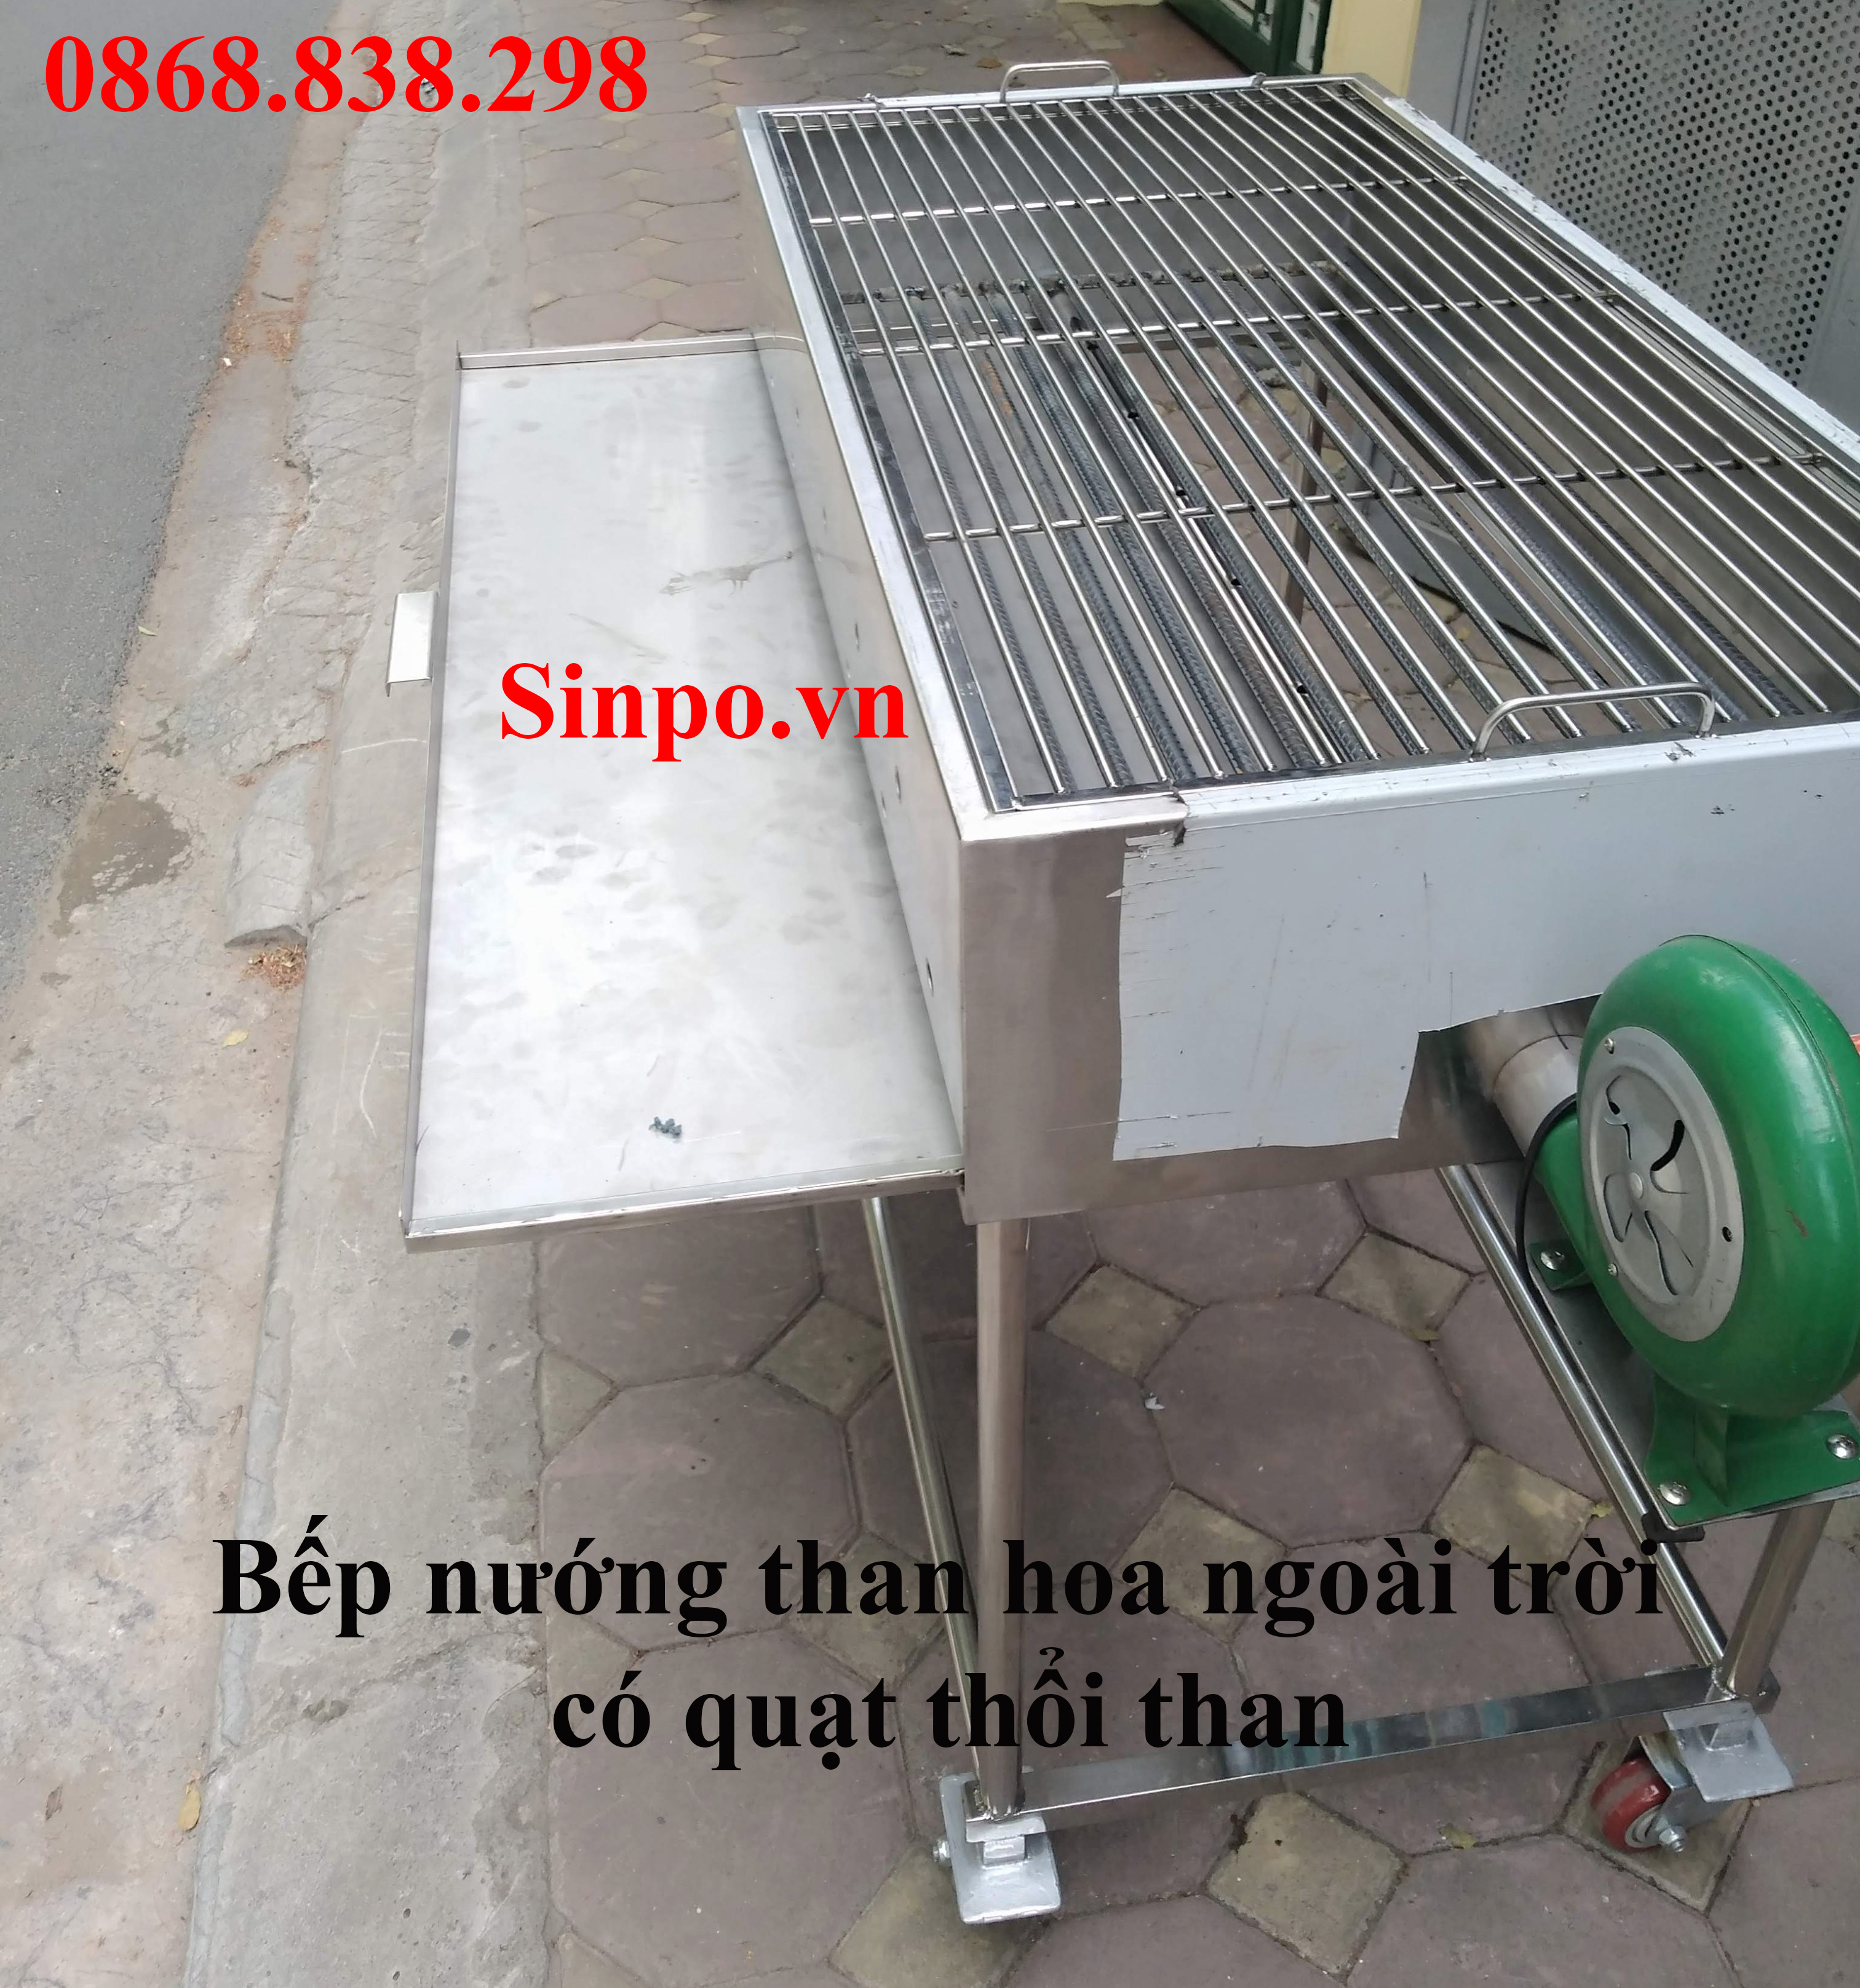 Giá bán bếp nướng than hoa ngoài trời có quạt thổi than uy tín tại Hà Nội, Hải Phòng, Đà nẵng, HCM